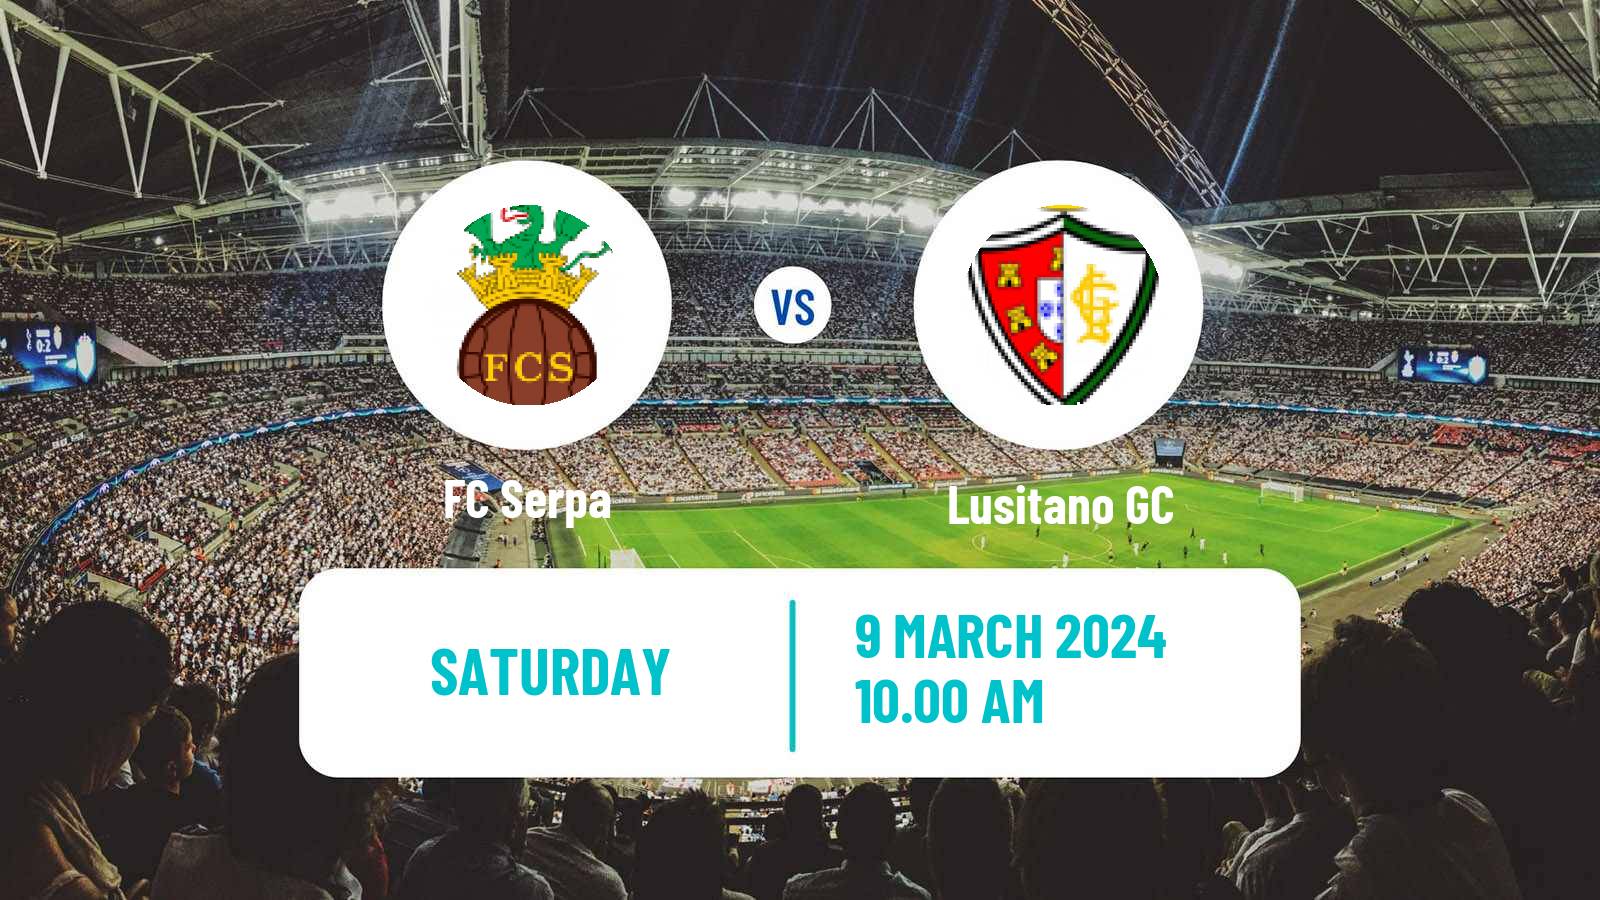 Soccer Campeonato de Portugal - Group D Serpa - Lusitano GC